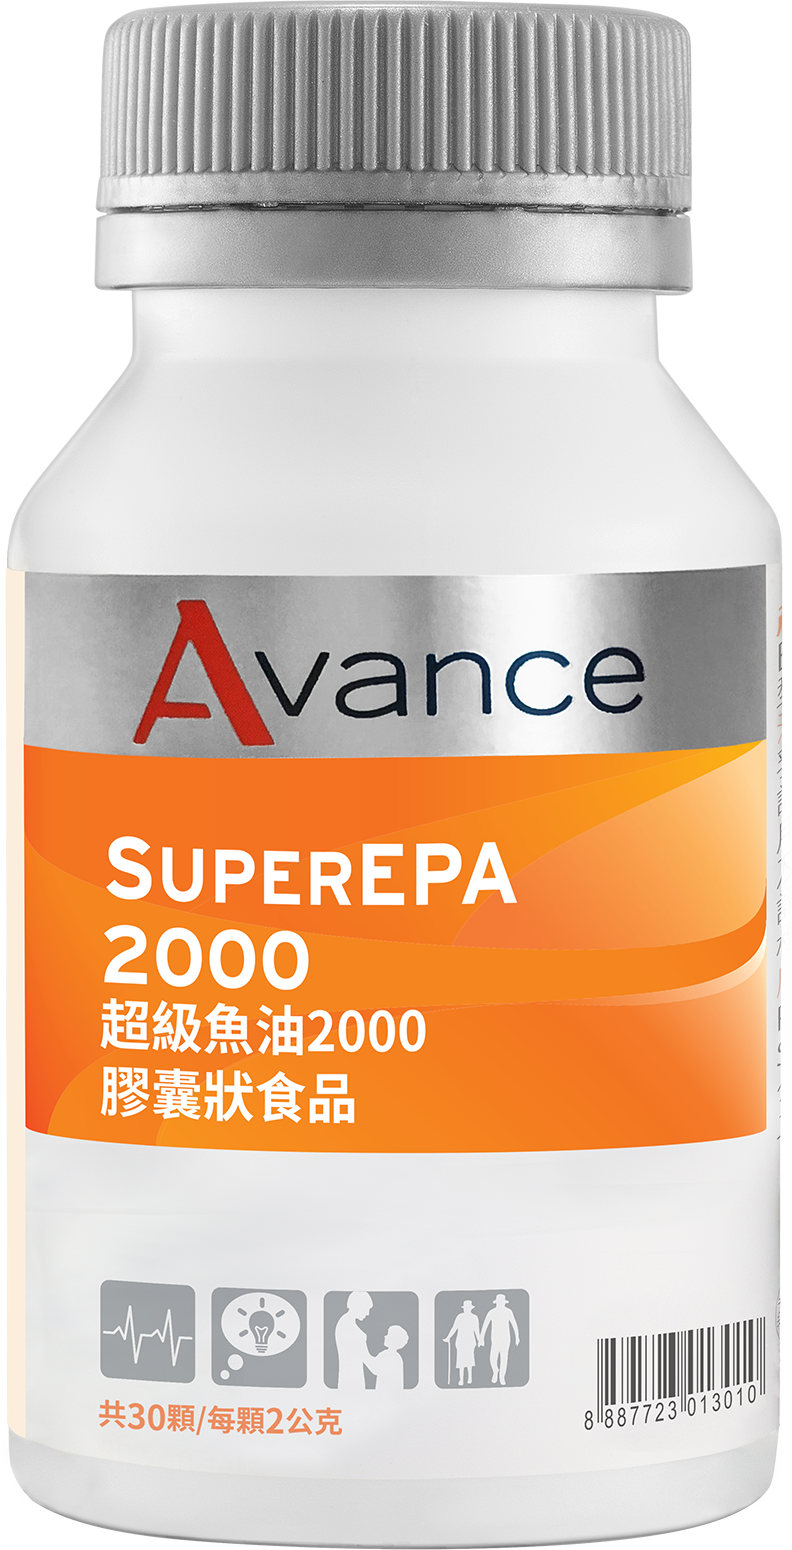 Super EPA 2000